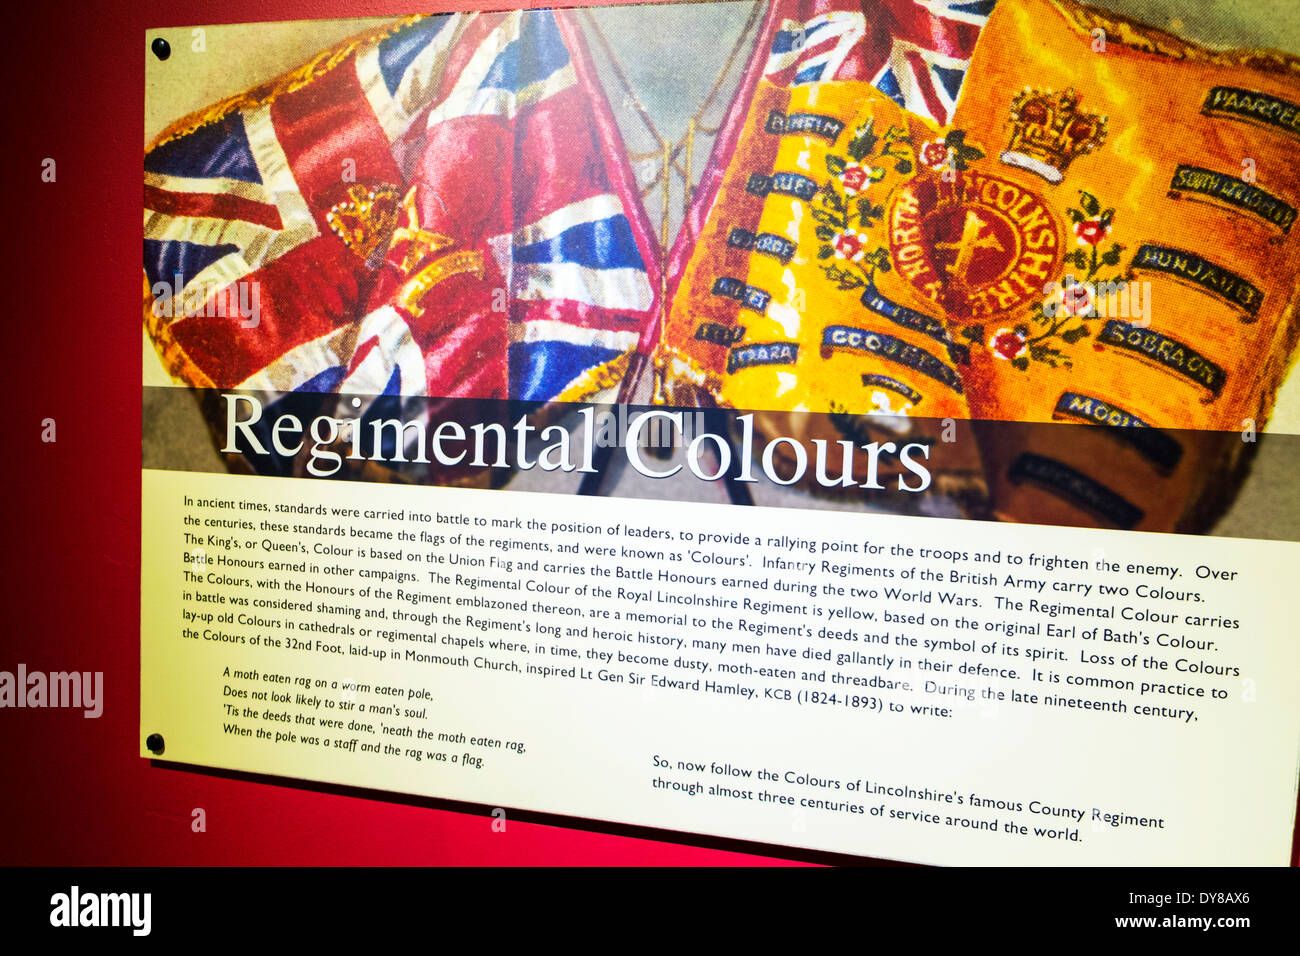 Les couleurs des drapeaux régimentaires signe d'informations l'avis de la ville de Lincoln Lincolnshire UK GB Angleterre Banque D'Images